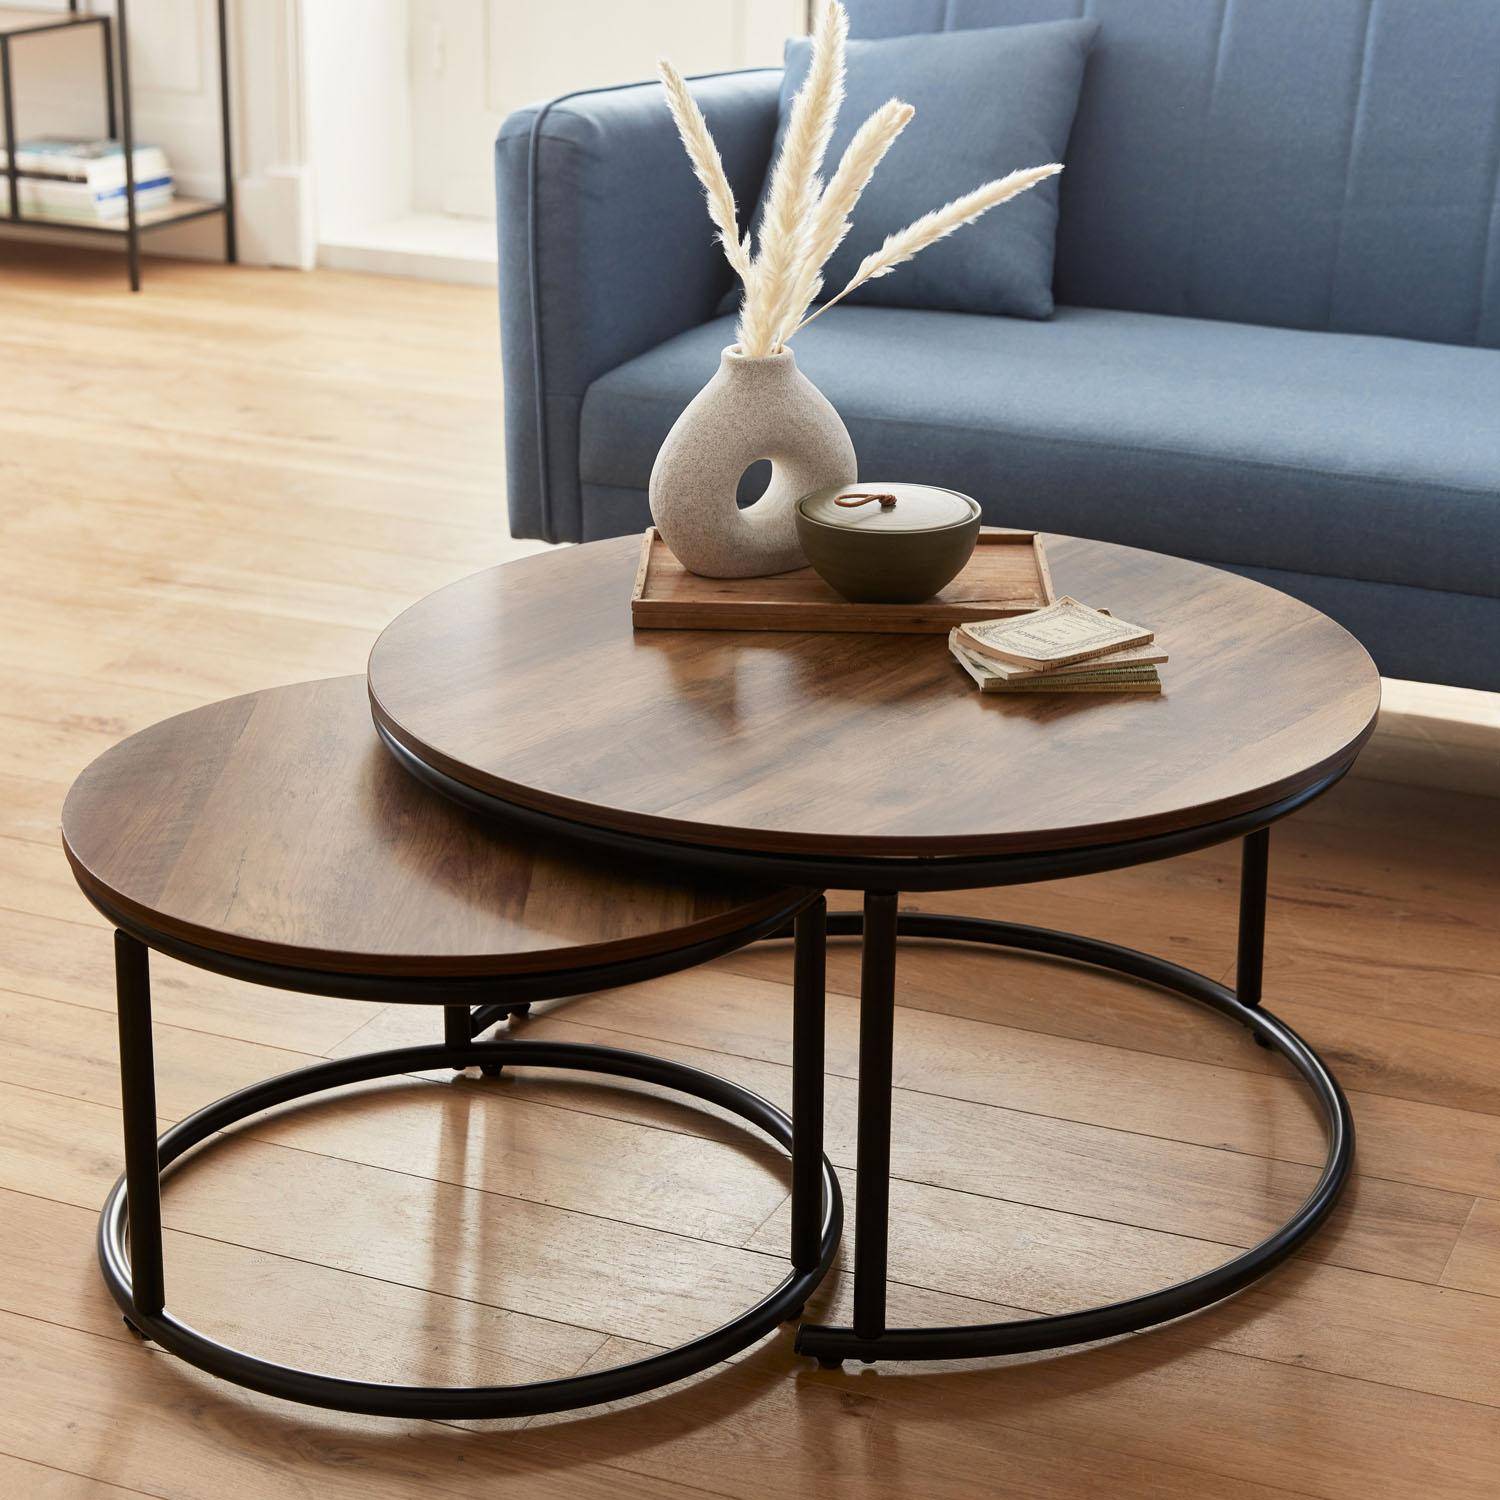 Set 2 ronde inschuifbare lage tafels van zwart metaal en een blad met houtlook, 1x Ø77xh40cm / x1 Ø57xh35cm,sweeek,Photo2